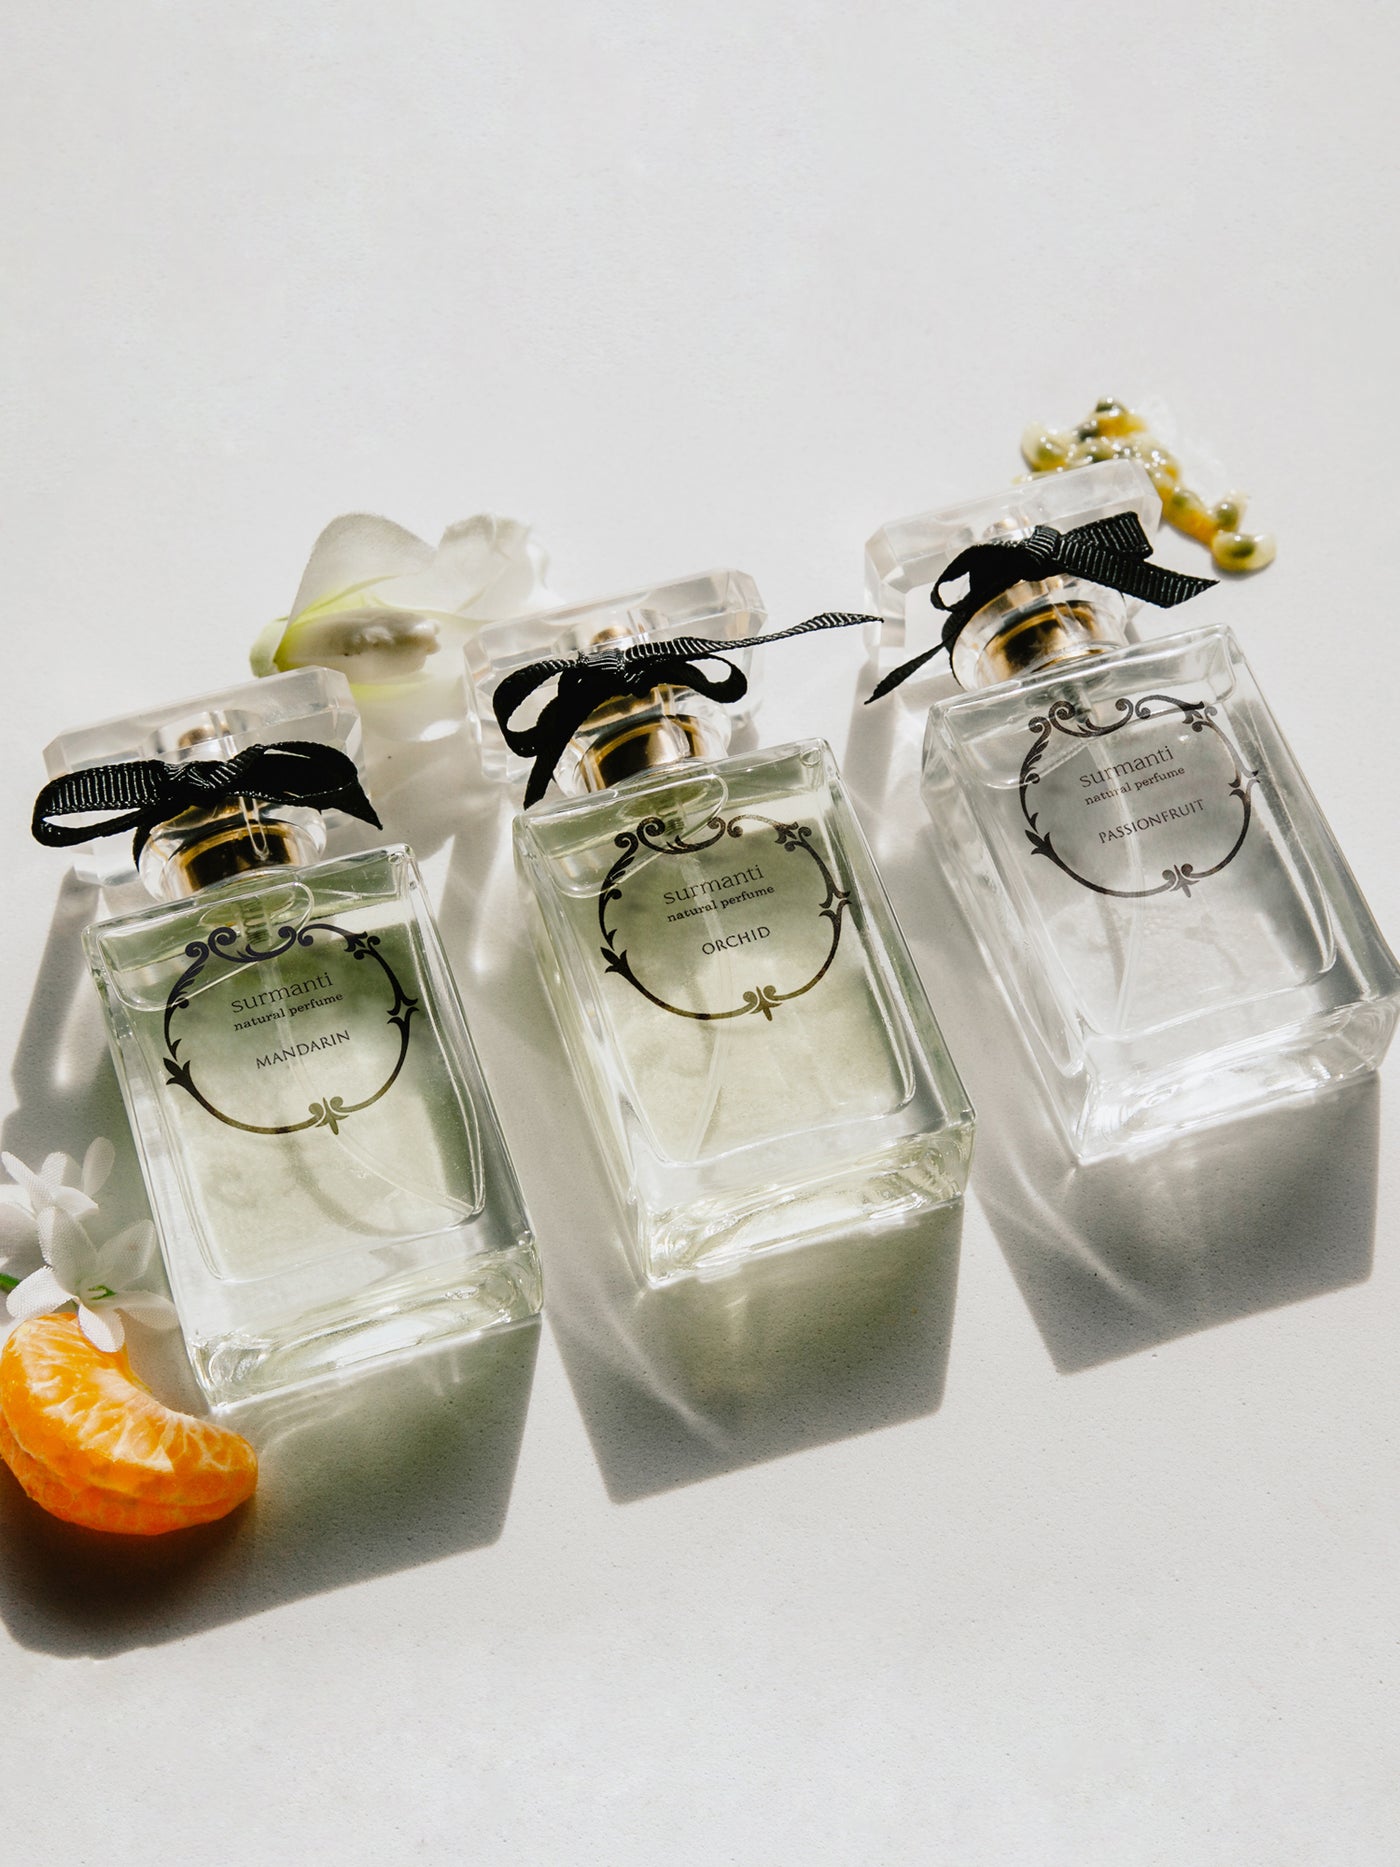 Mandarin - Surmanti Perfume